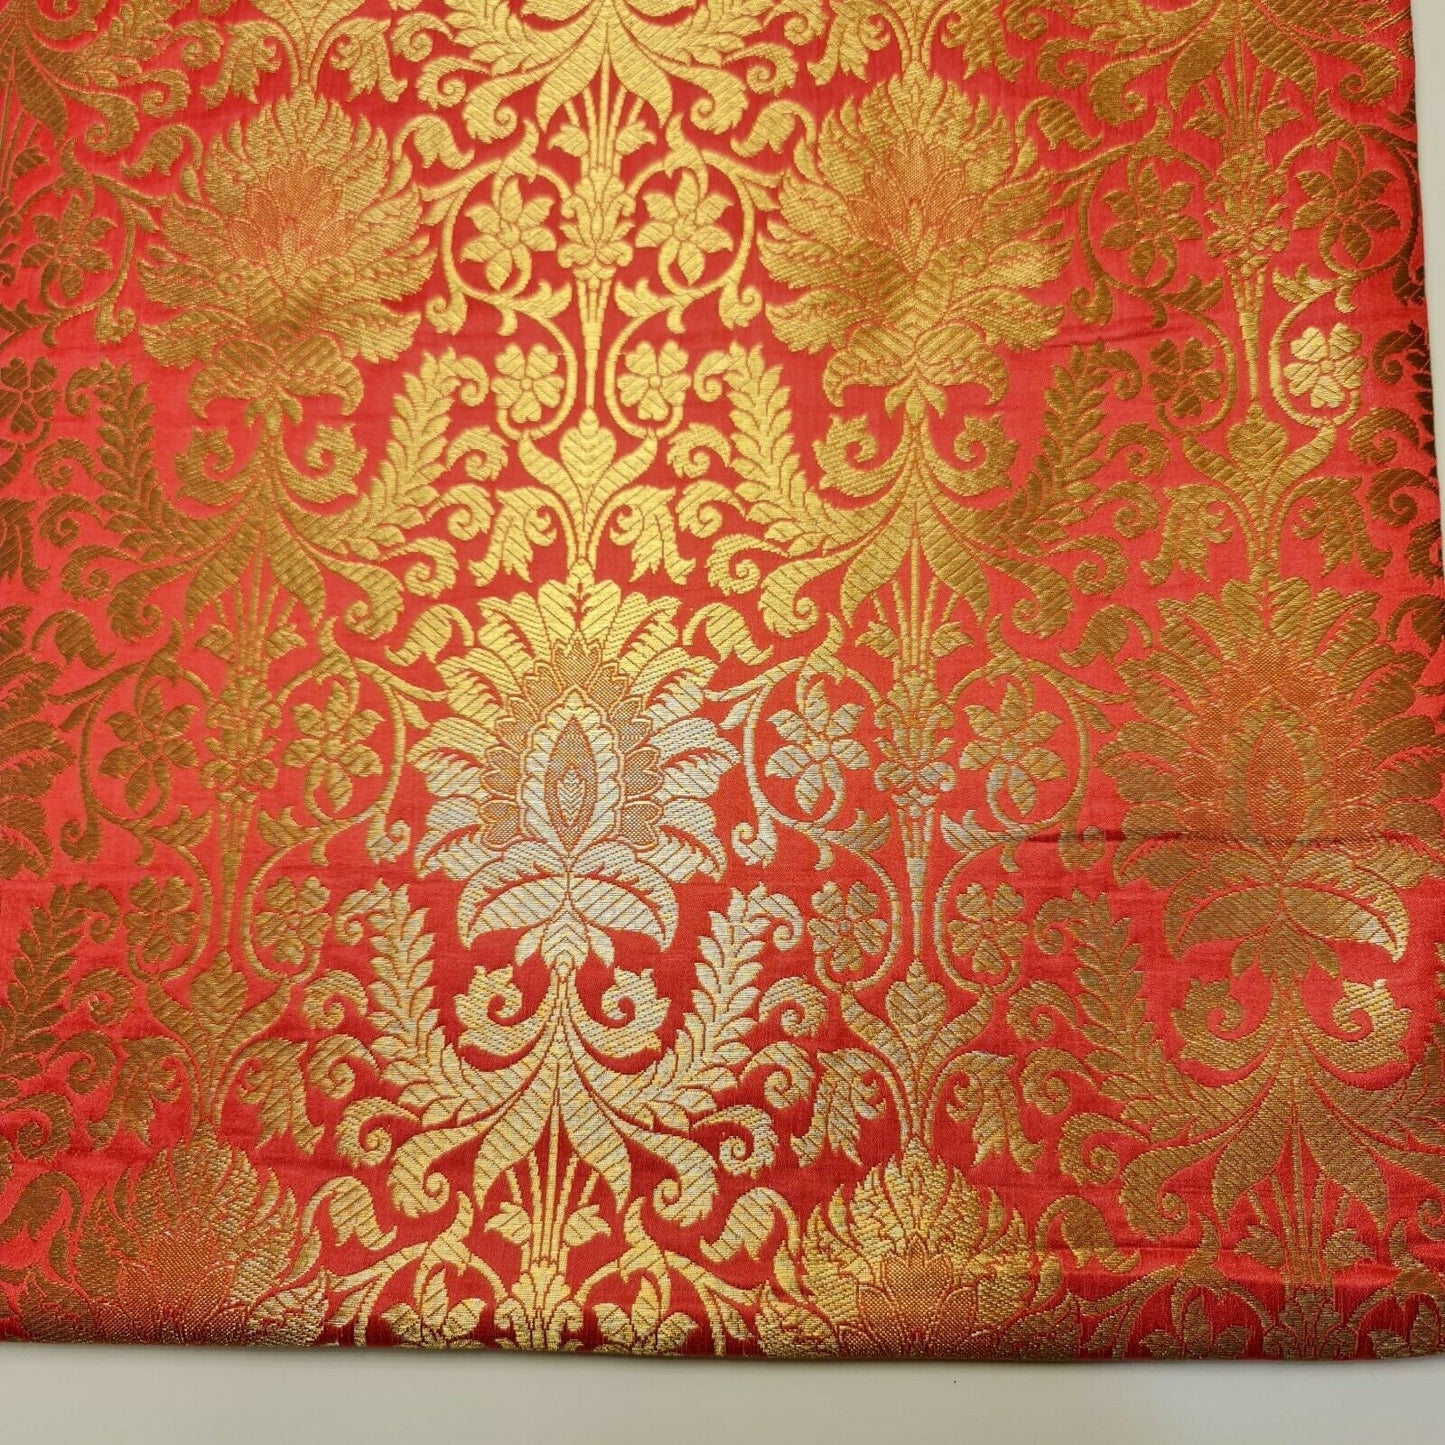 Floral Gold Leaf Damask Metallic Indian Banarasi Brocade Fabric Design 44" Meter (Coral Pink)